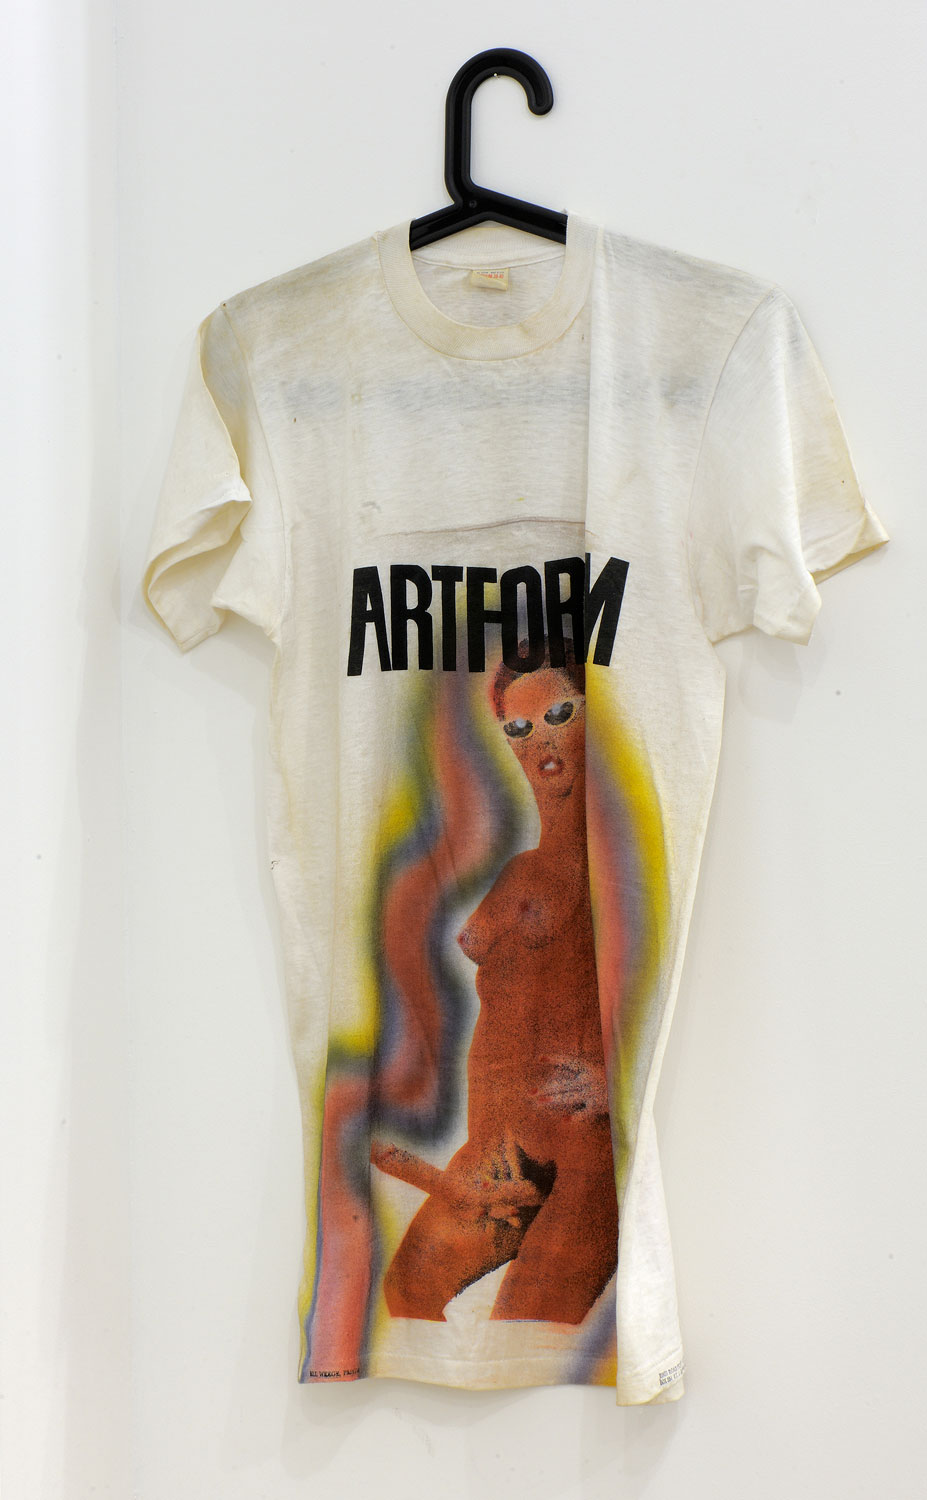 Lynda Benglis - Artforum T-Shirt, 1974